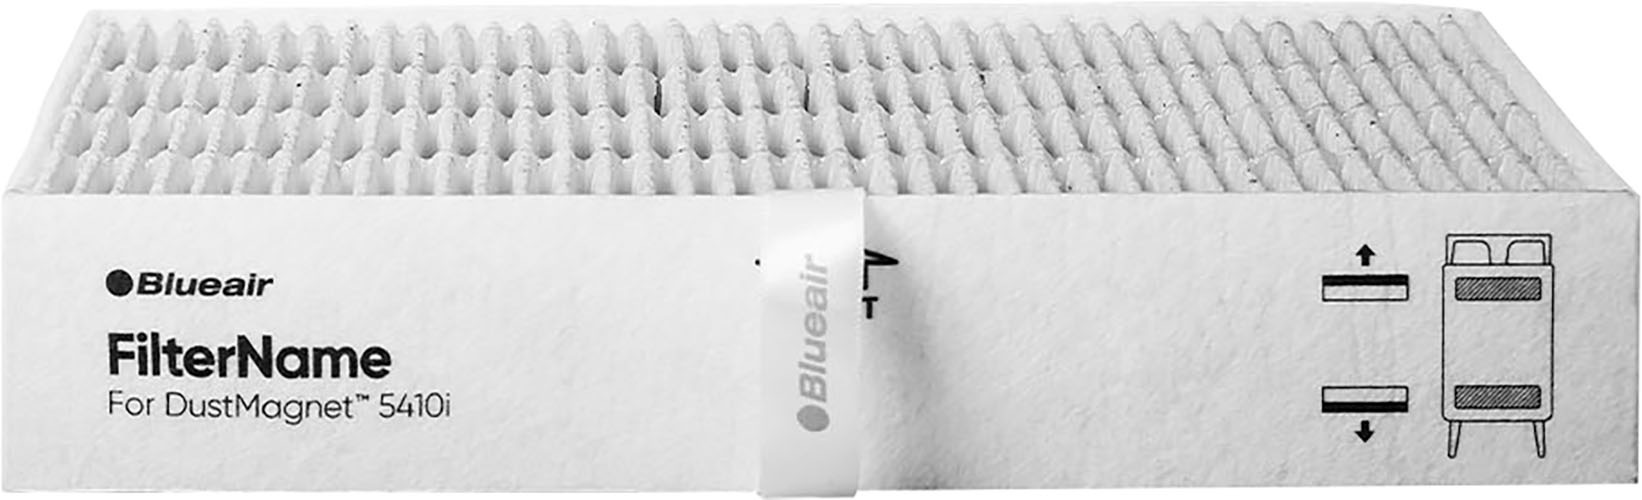 Blueair HEPA-Filter »Replacement Filter DustMagnet 5400«, passt zu DustMagnet 5400 Serie, 2 St.